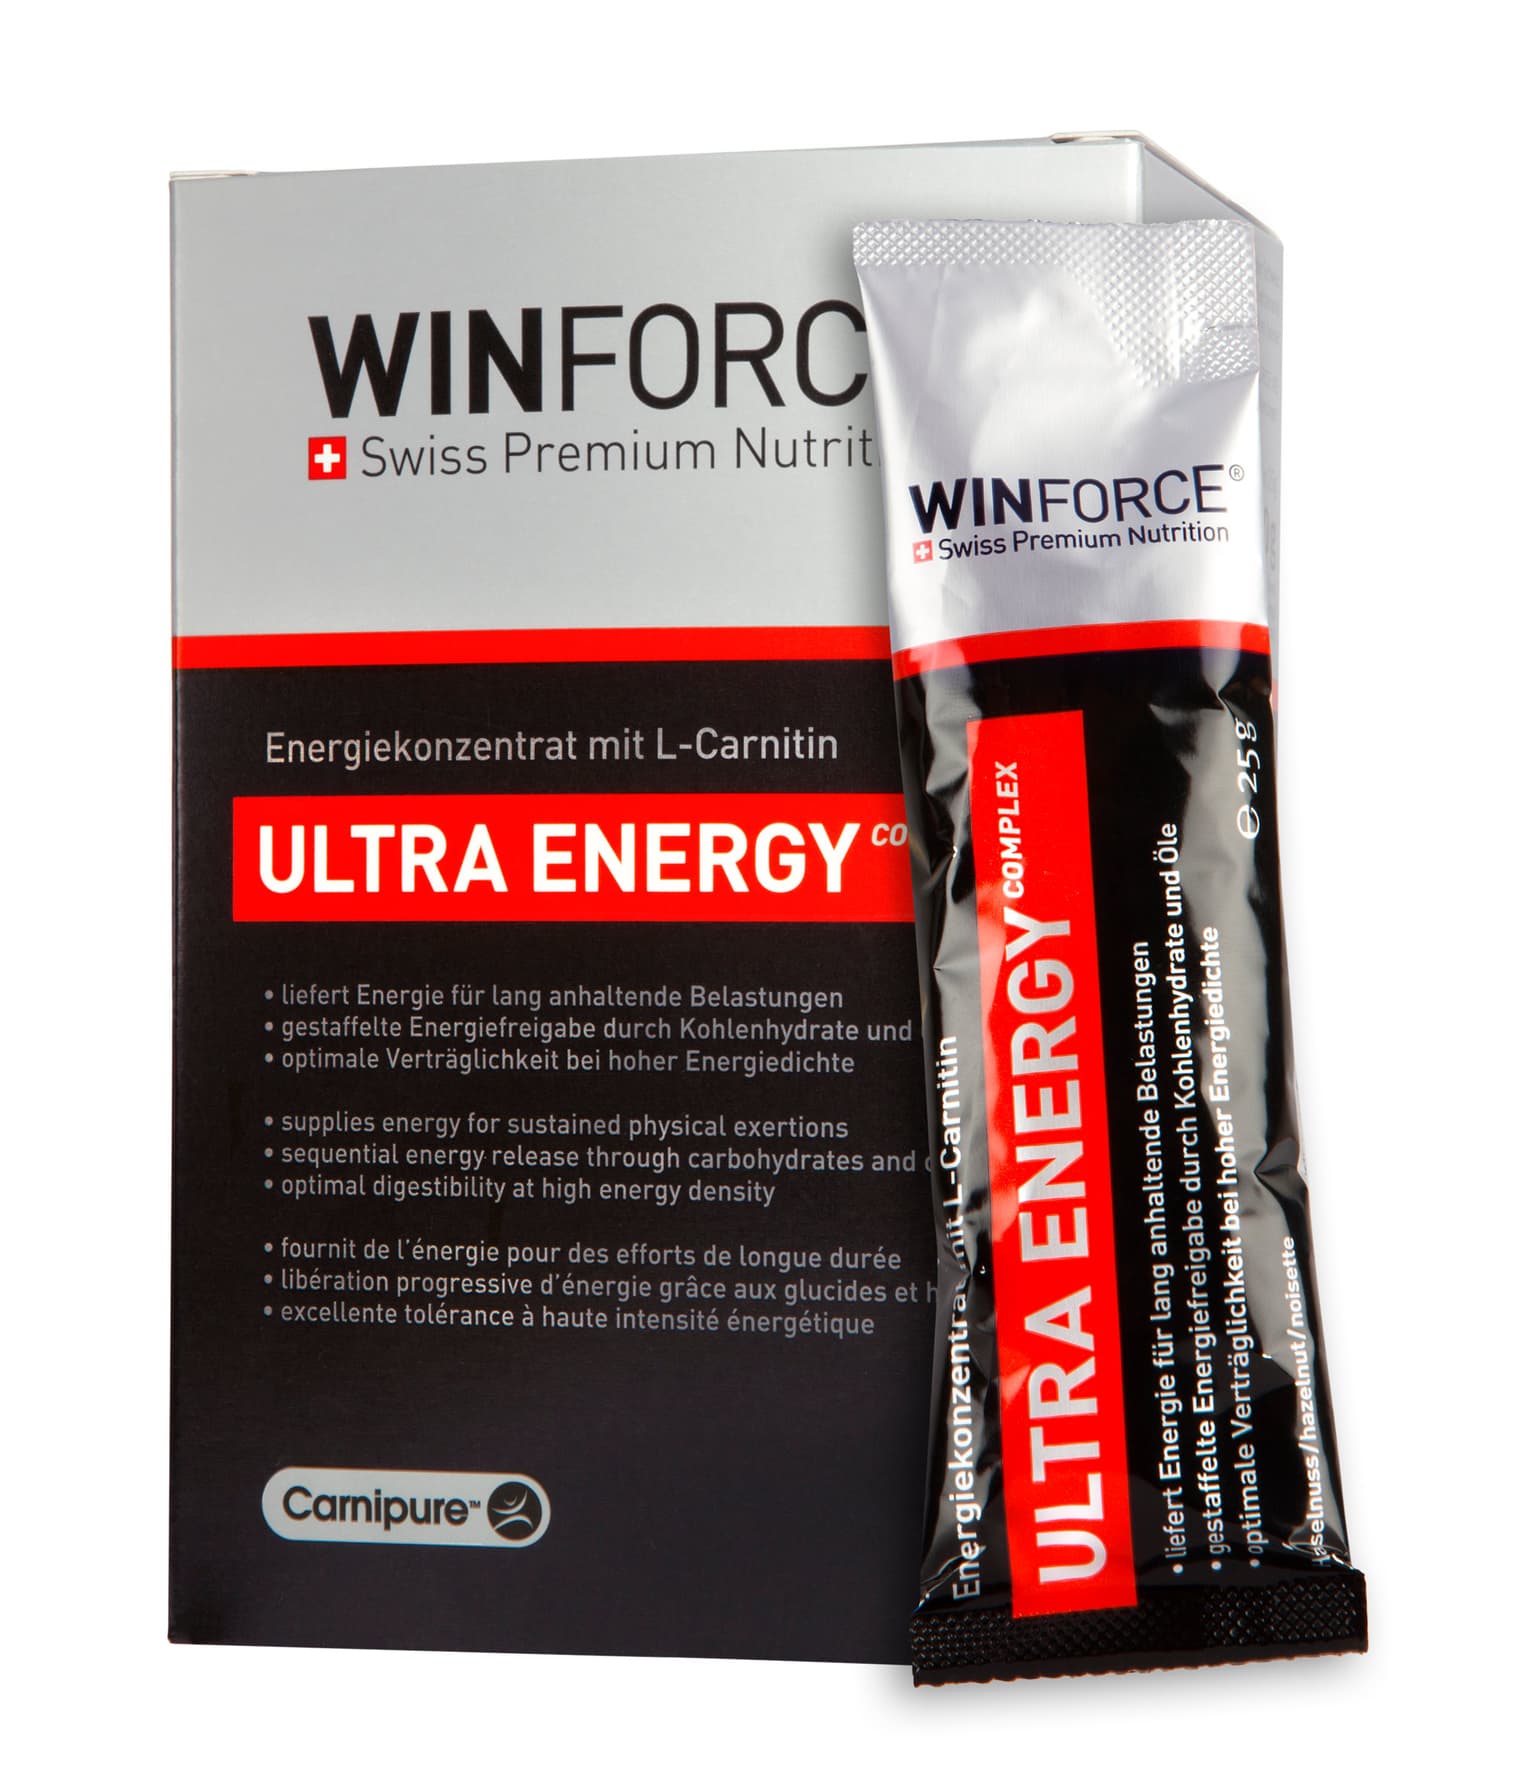 Winforce Winforce Ultra Energy Complex Gel farbig 1